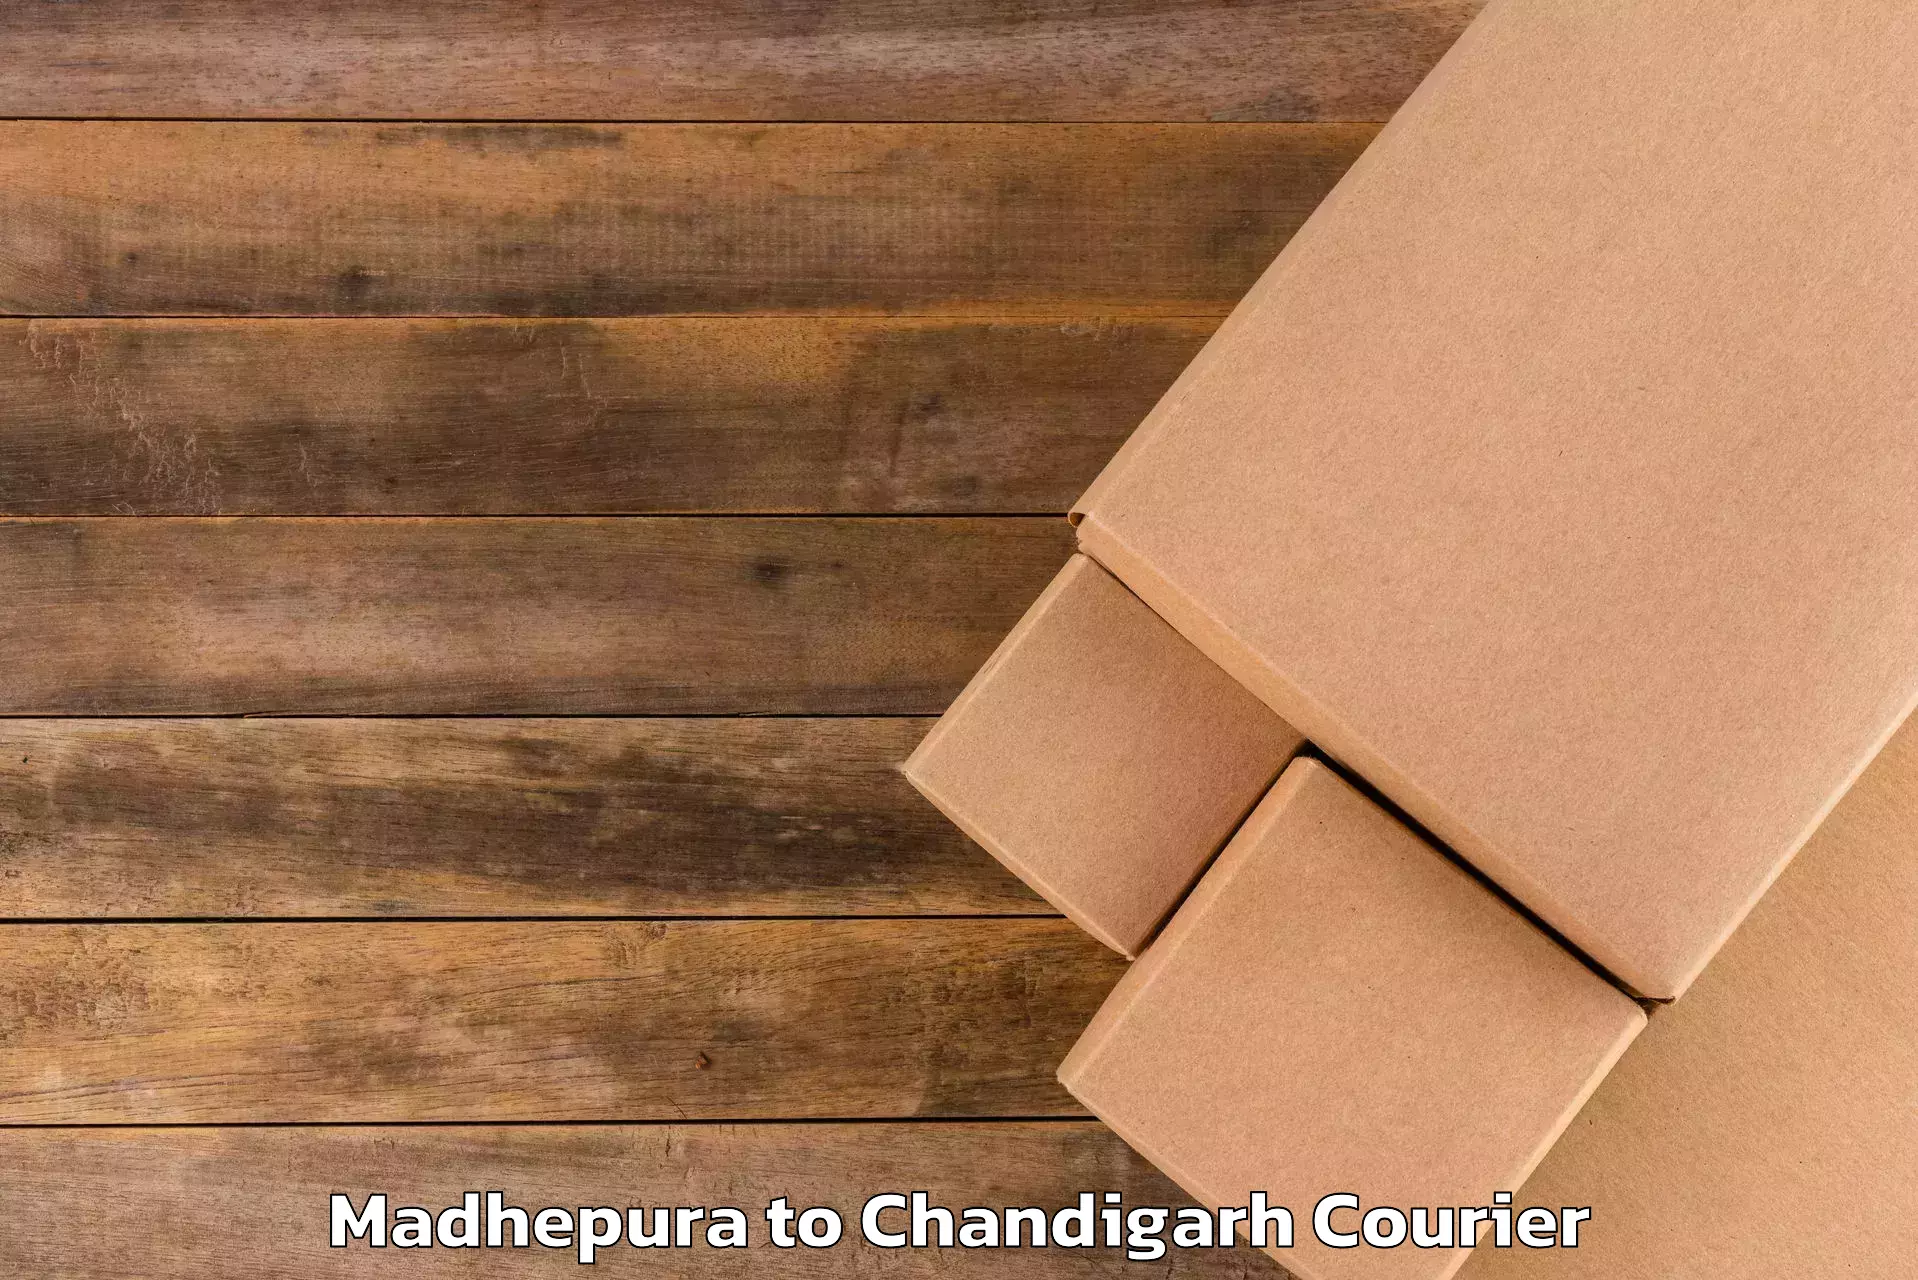 Emergency baggage service Madhepura to Chandigarh